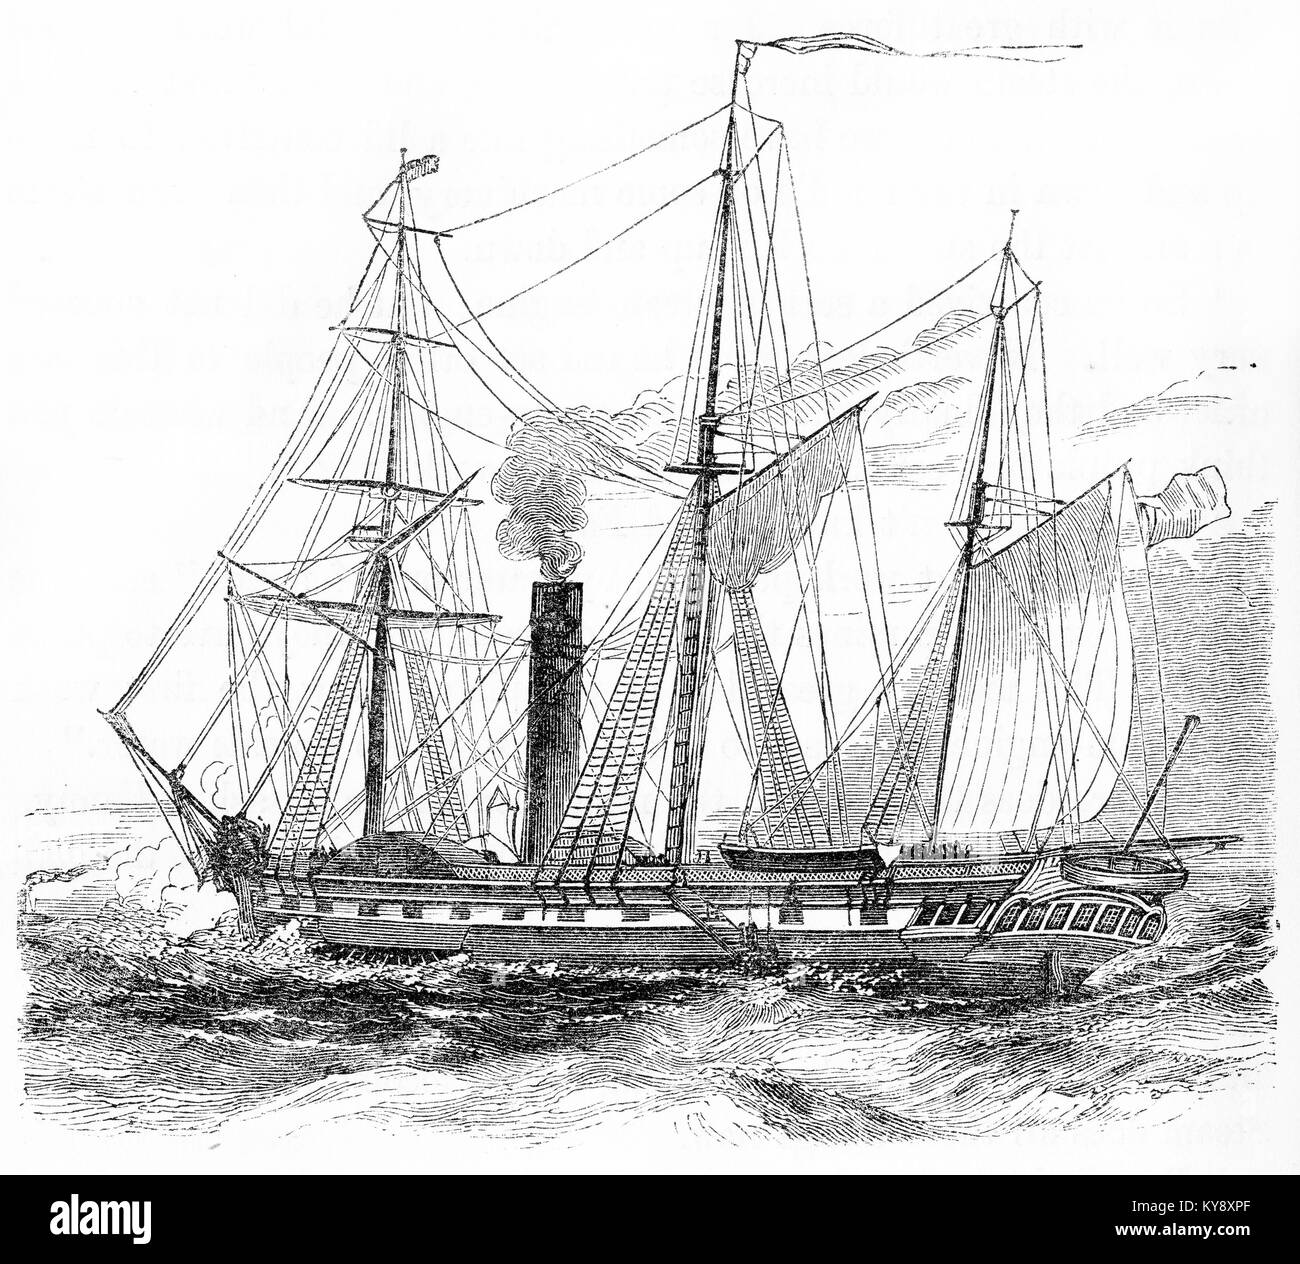 Grabado de un velero equipado con calderas de vapor durante la época victoriana. A partir de un original grabado en la Harper's libros de cuentos por Jacob Abbott, 1854. Foto de stock